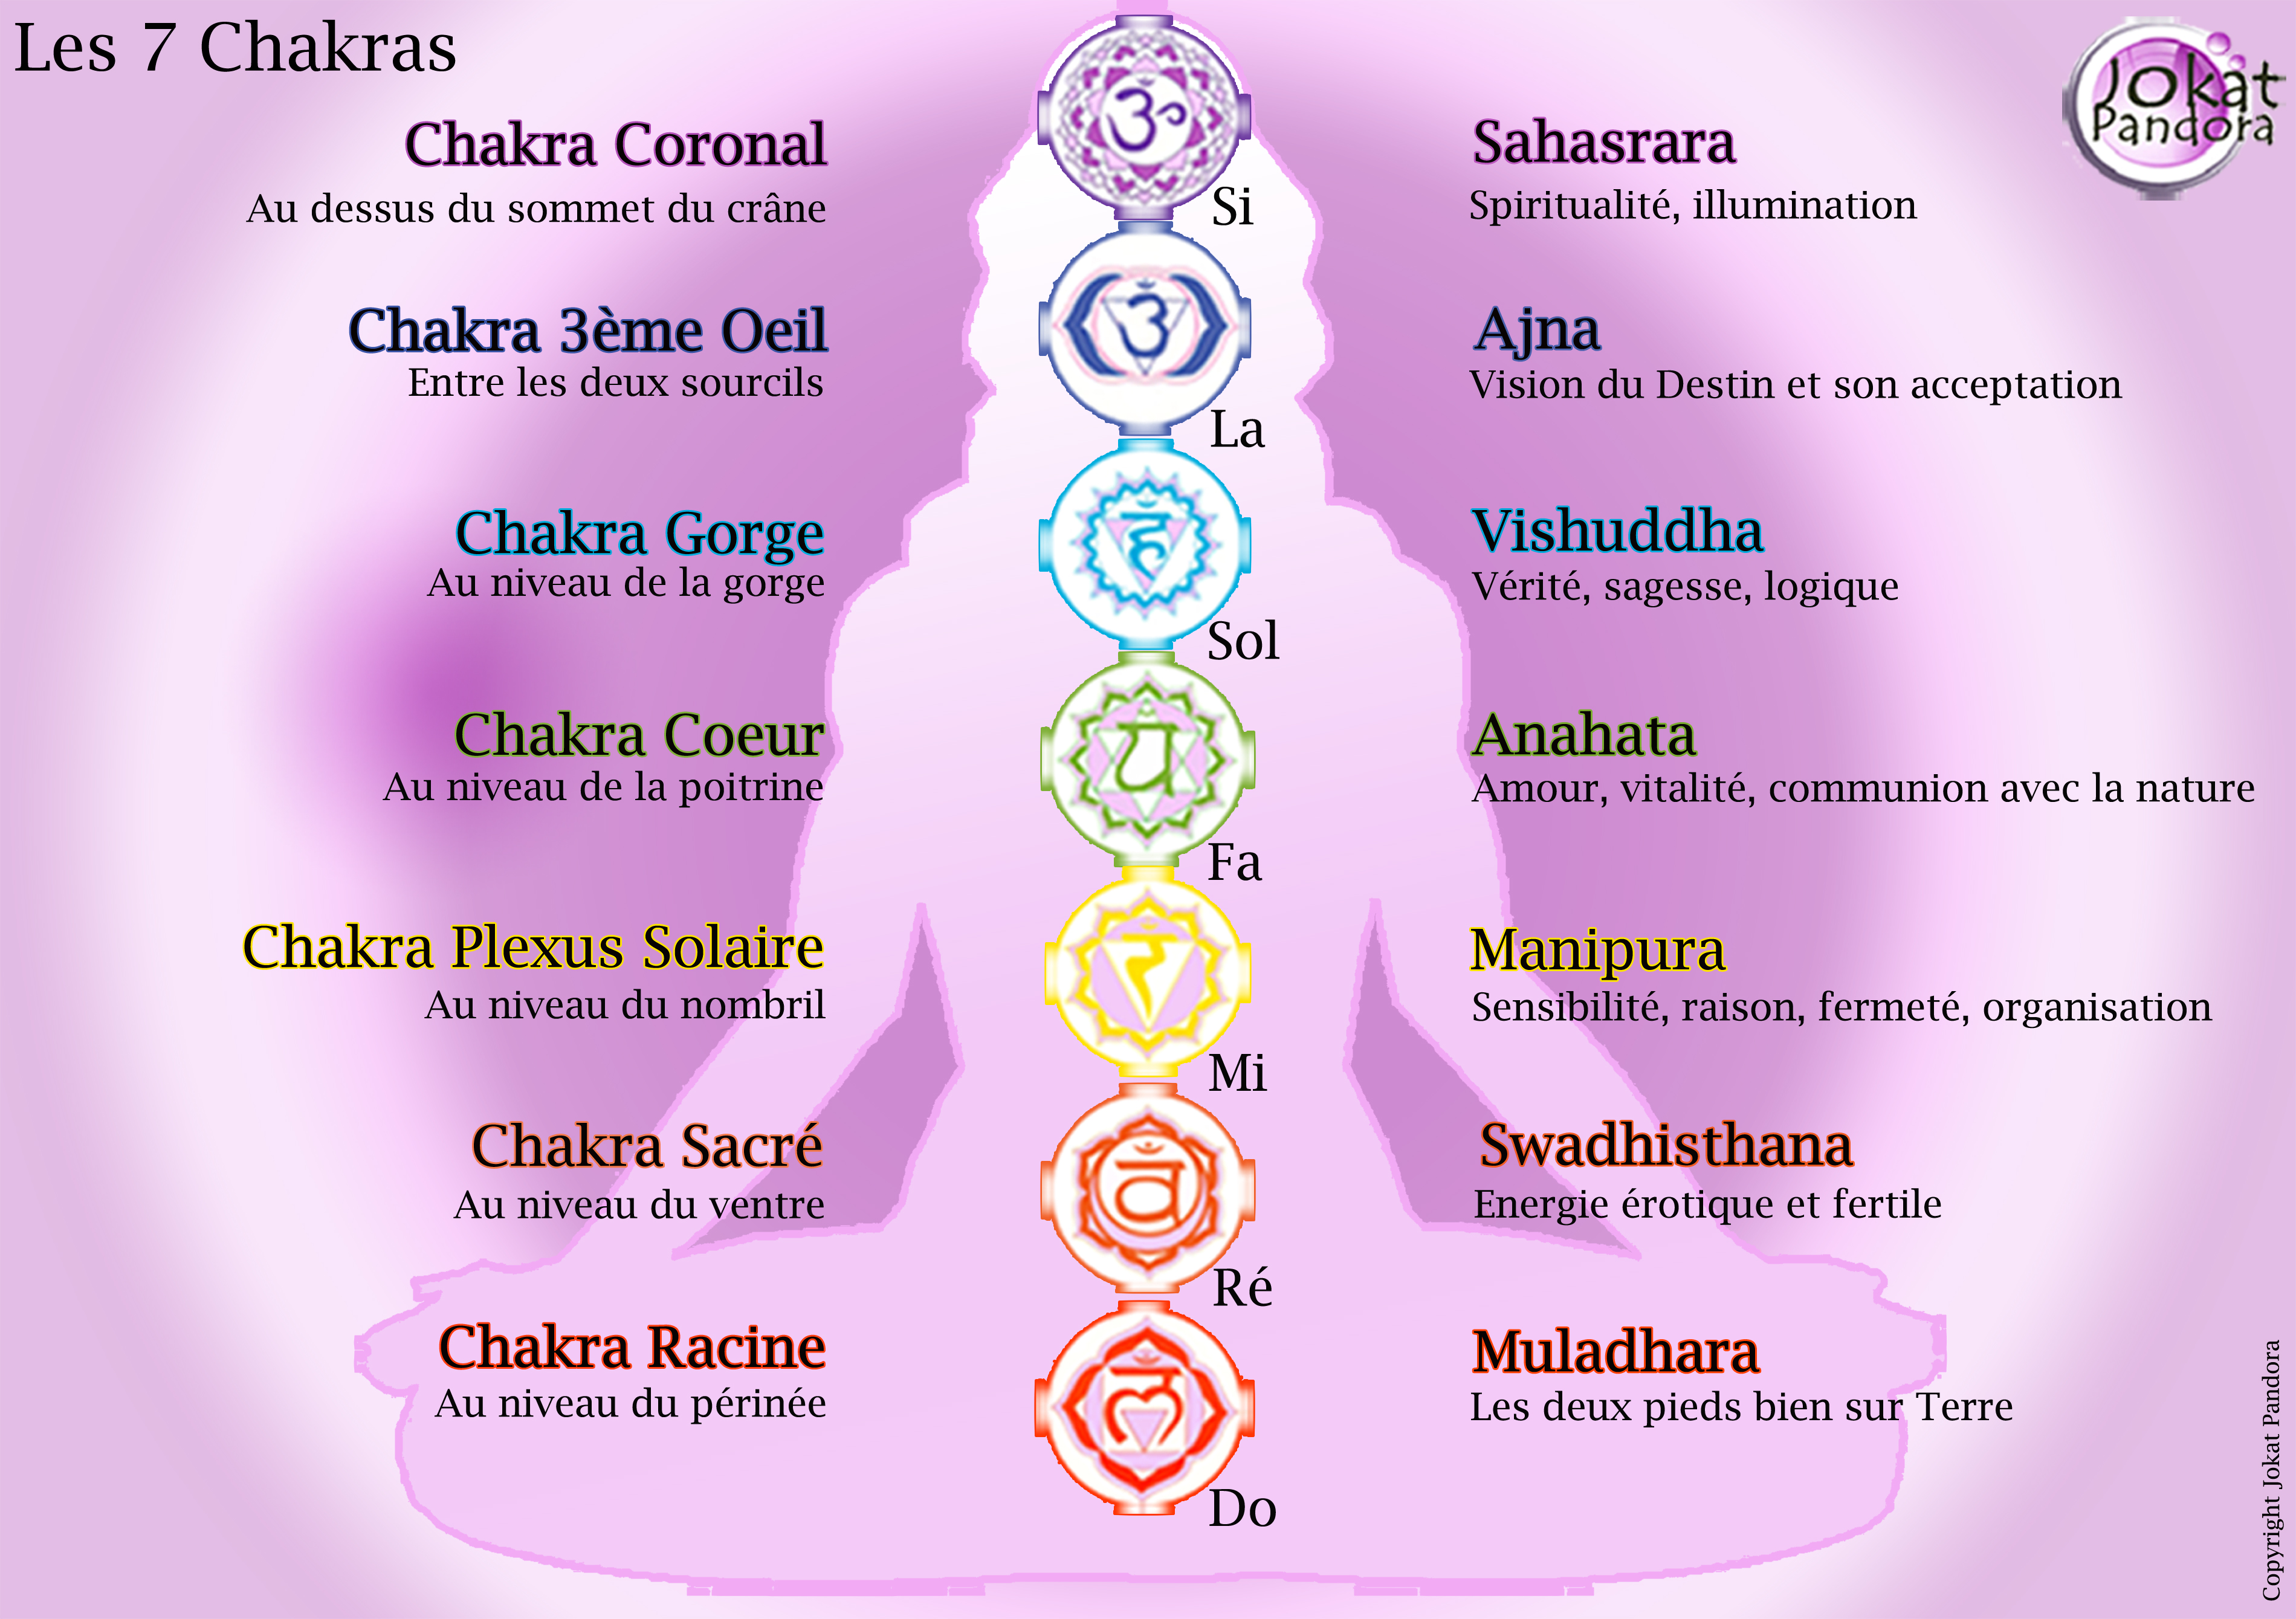 Les 7 chakras et leurs notes